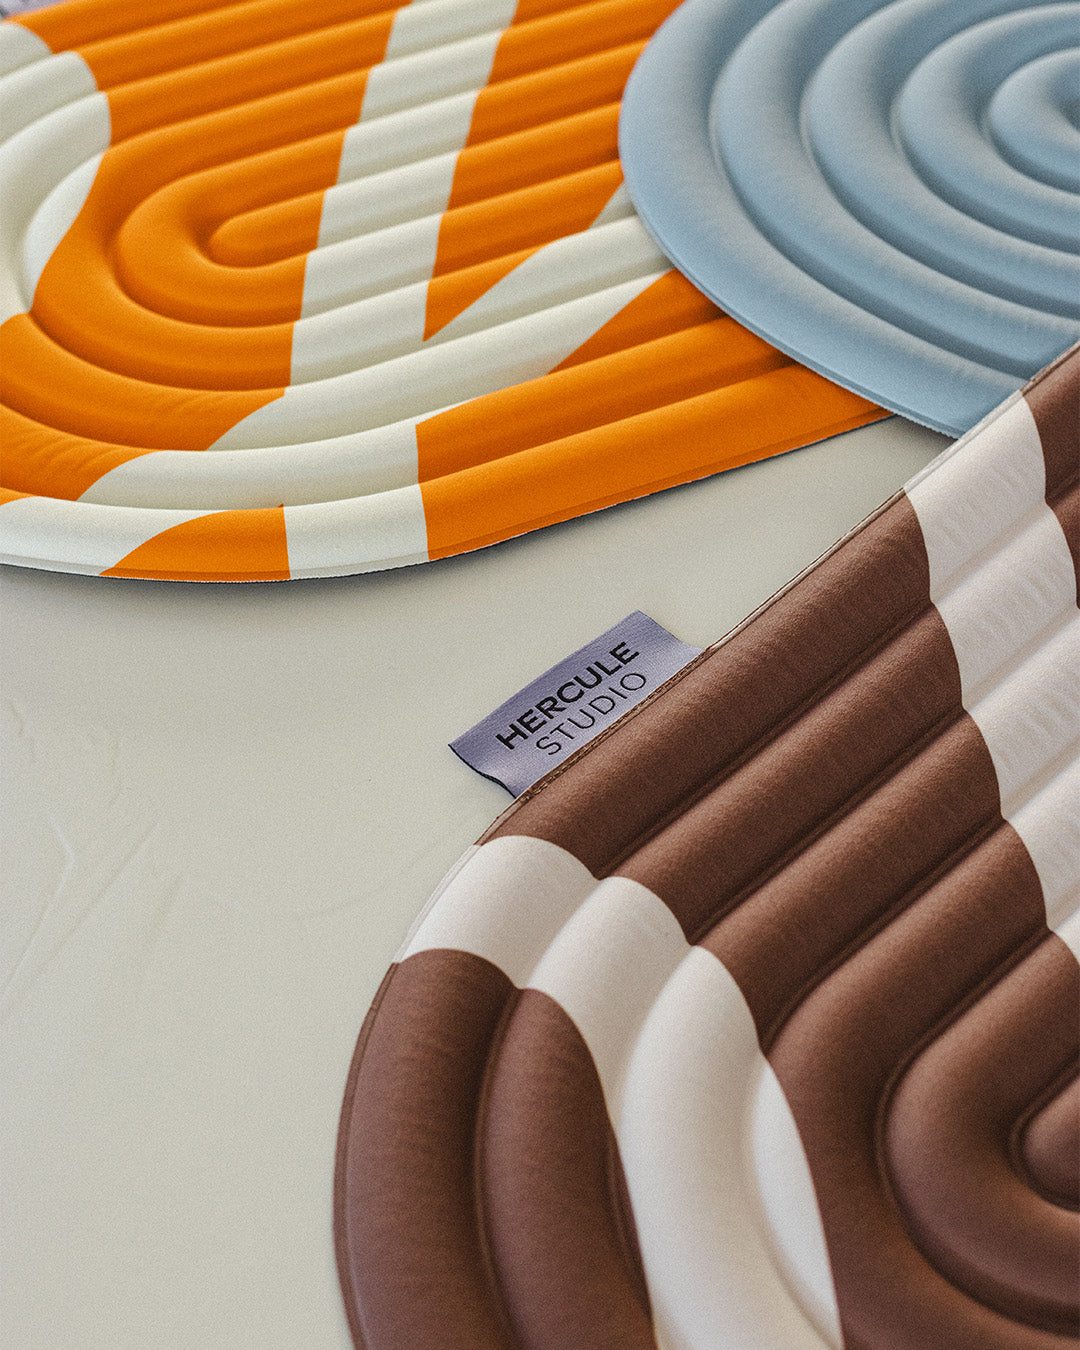 Mini tapis de sol pad de confort de la marque hercule studio modèle galé couleur axel bari orange pop photo lifestyle